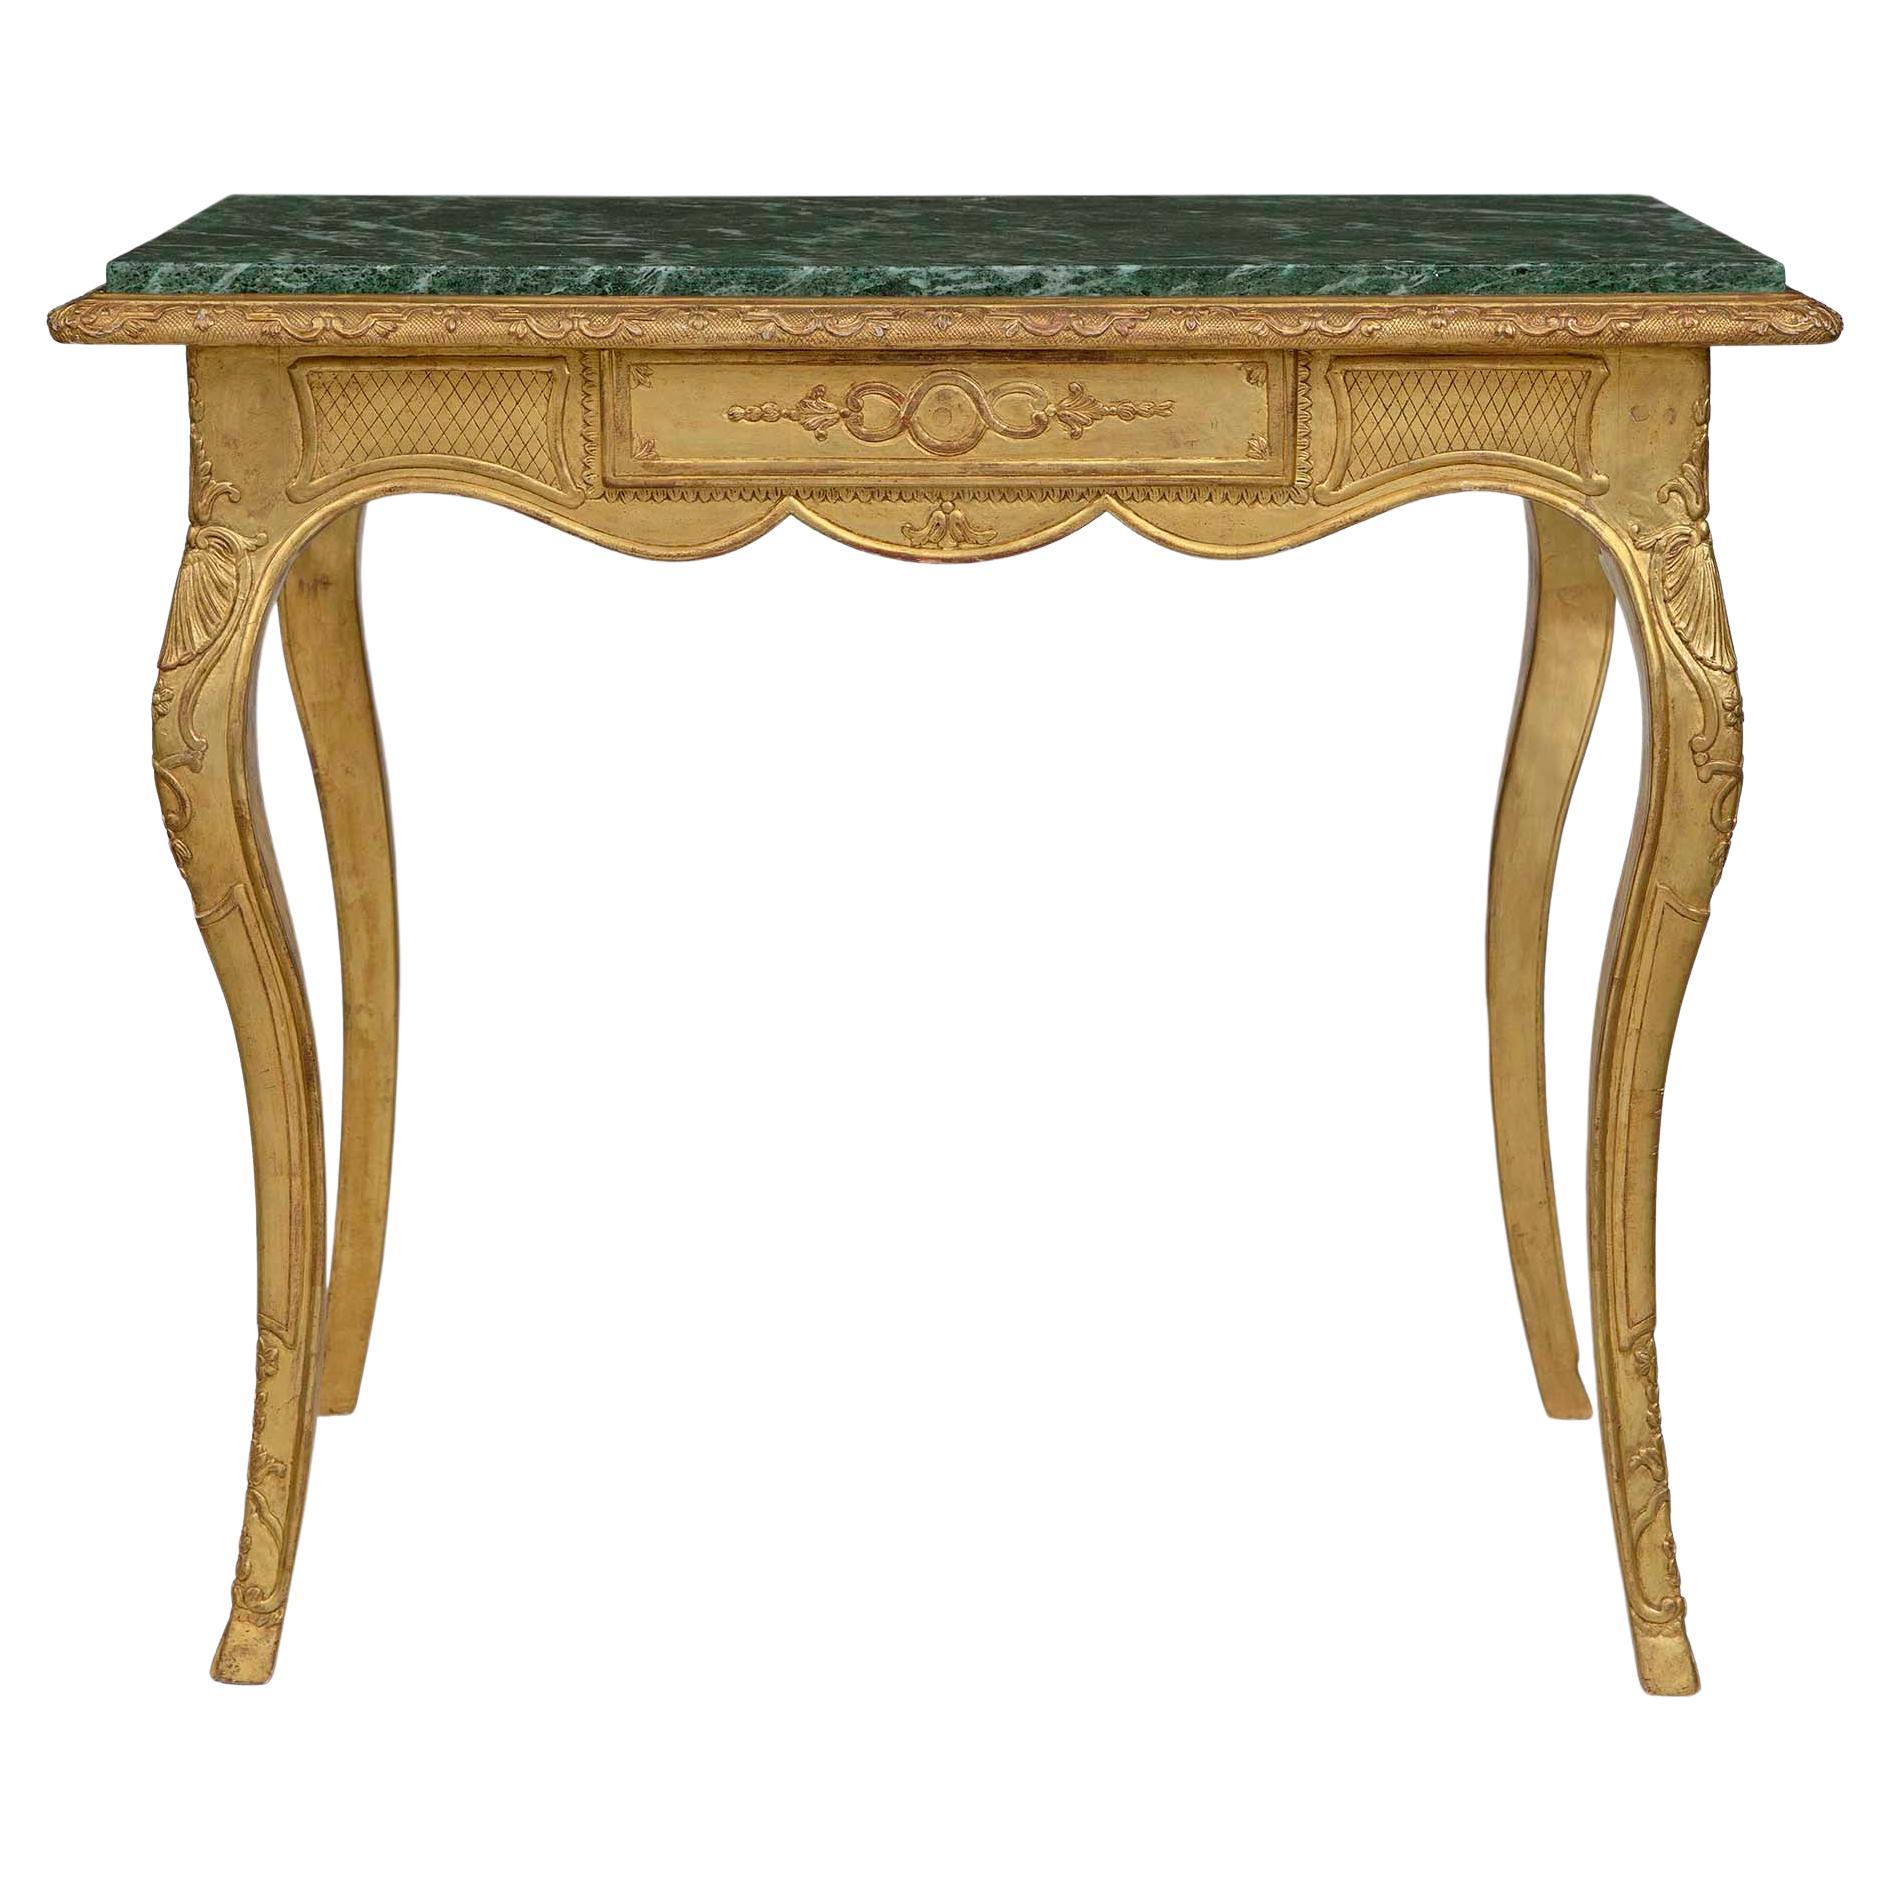 Rechteckiger Tisch aus vergoldetem Holz und Marmor im Louis XV.-Stil des frühen 19. Jahrhunderts